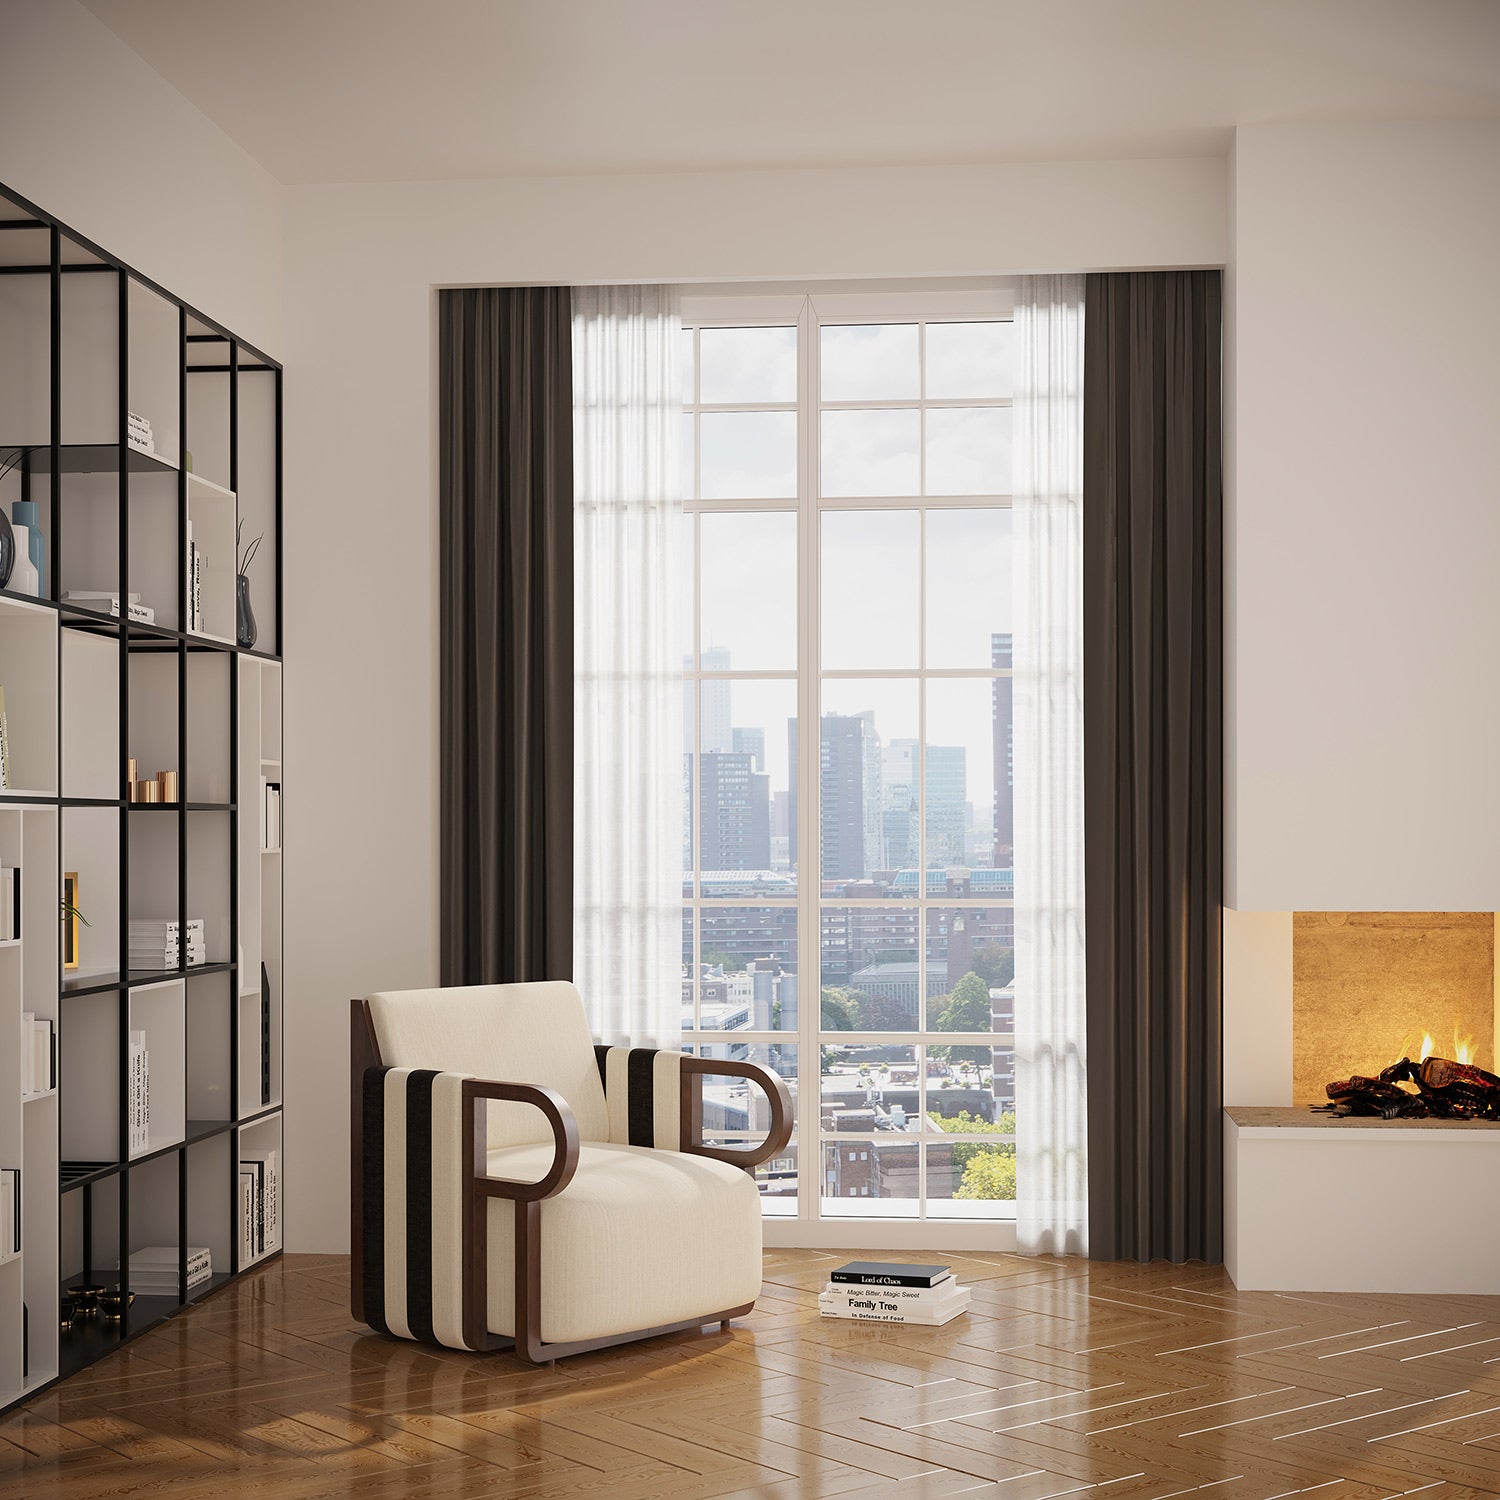 Modern nappaliban, ablak előtt, kandalló mellett álló kortars, design fotel.